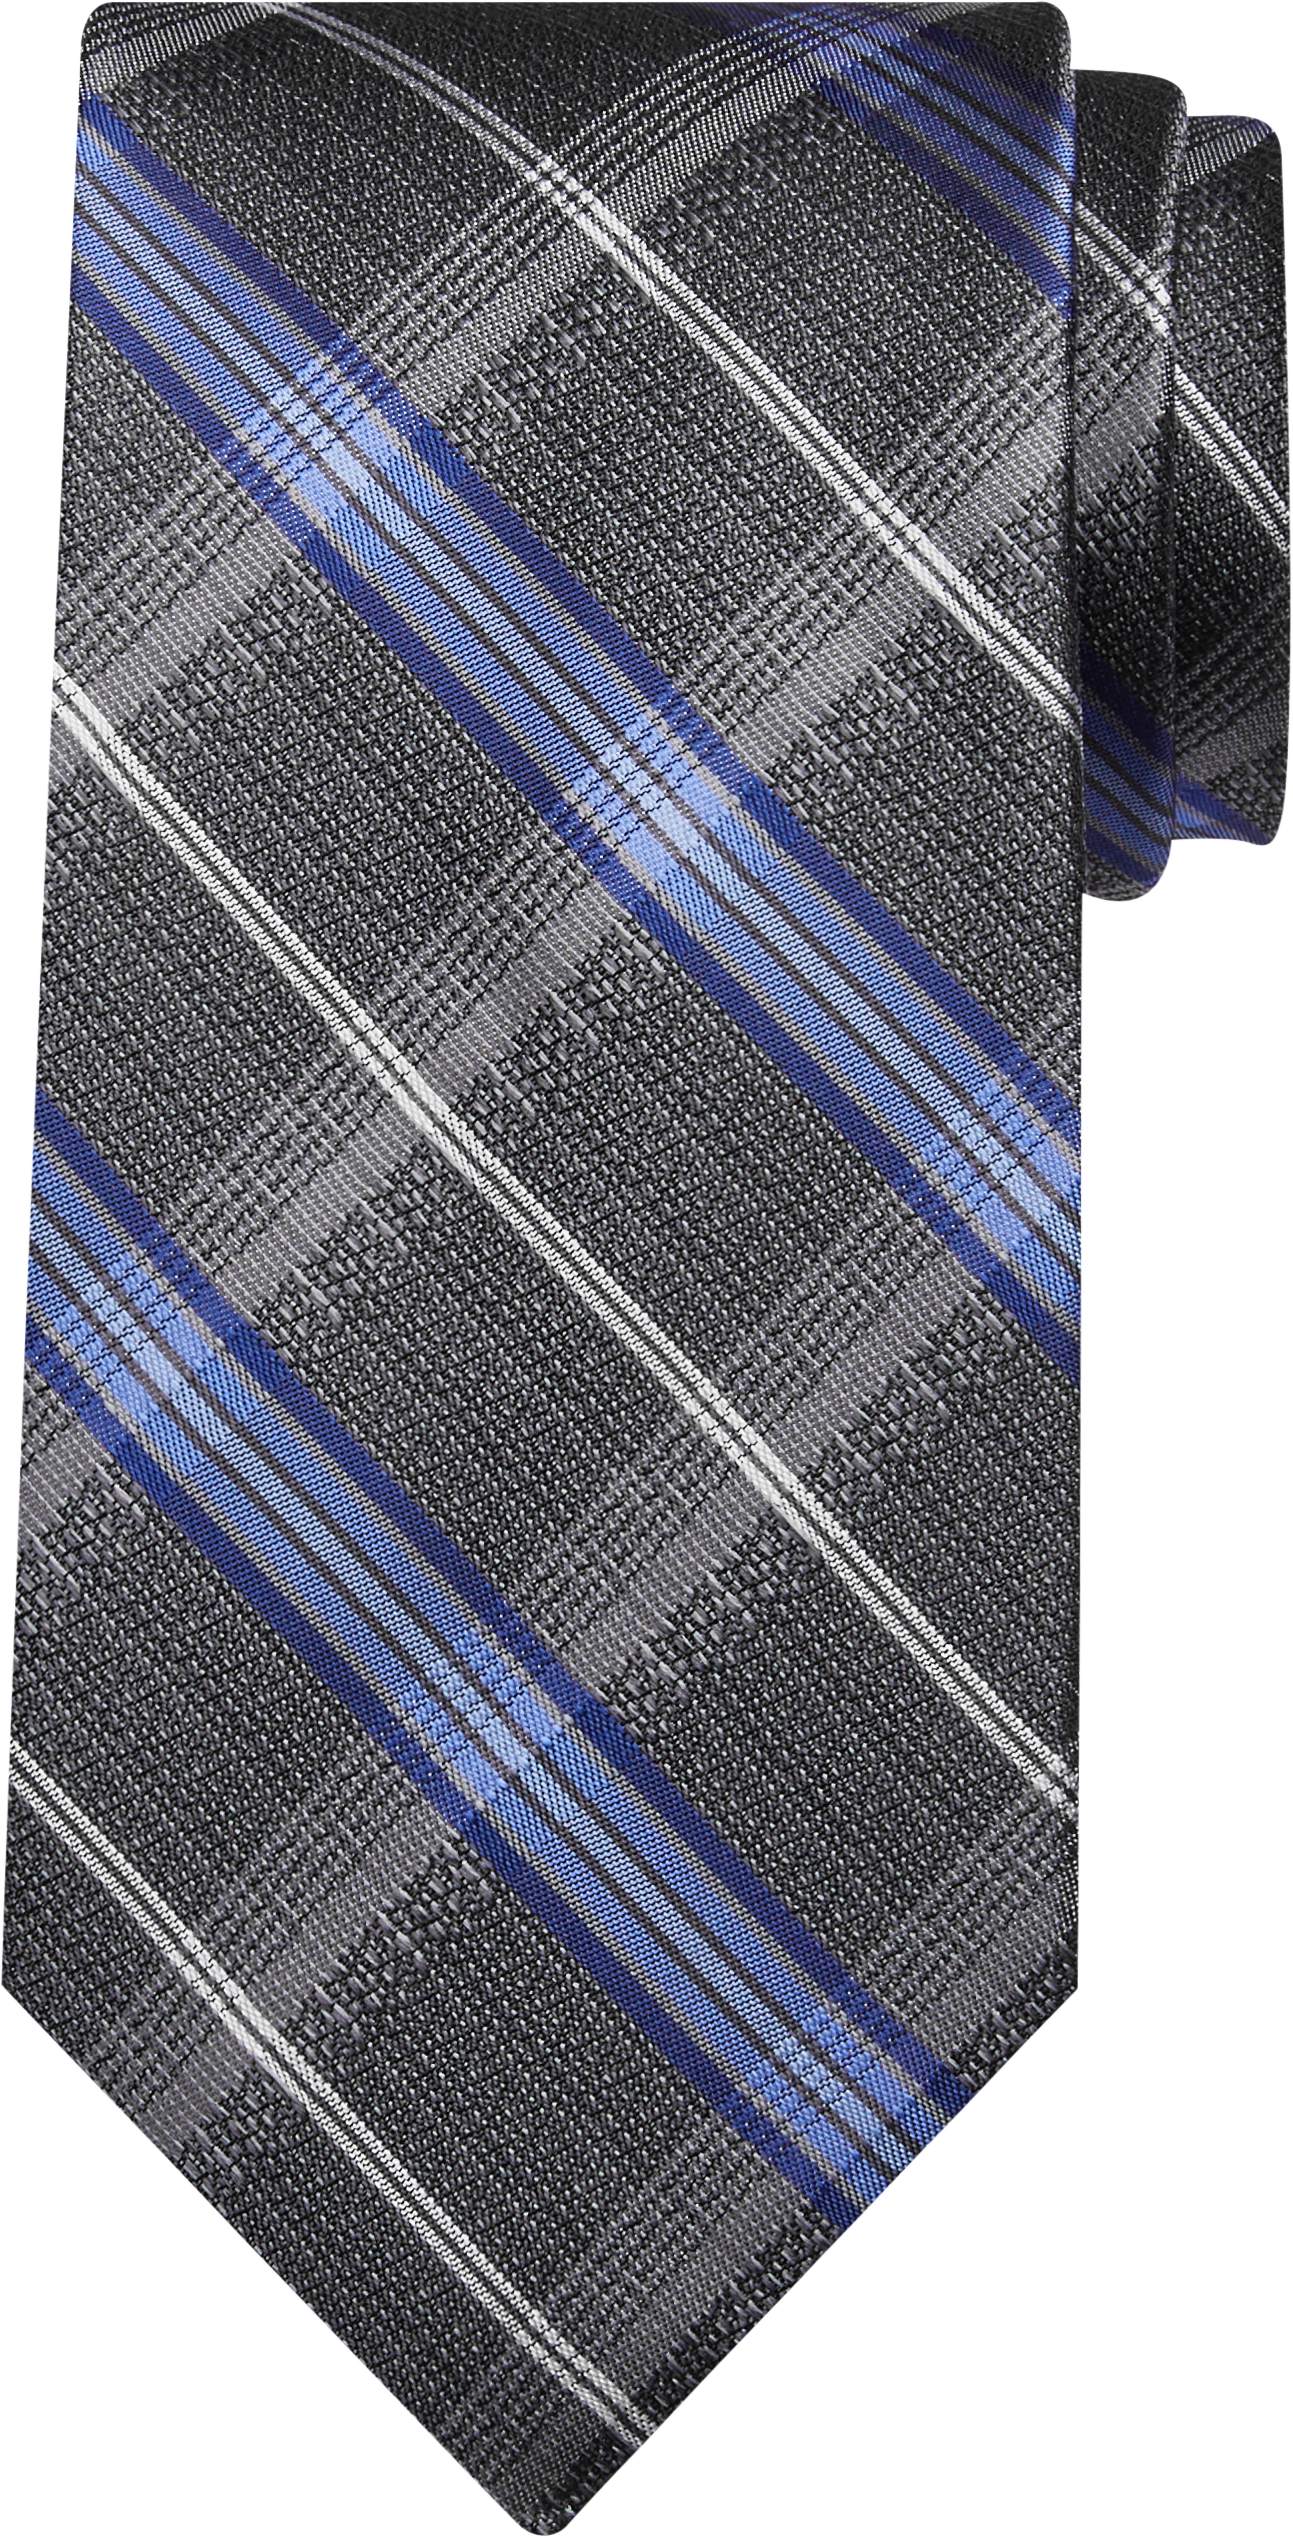 Pronto Uomo Platinum Narrow Tie, Blue & Charcoal Plaid - Men's Brands ...